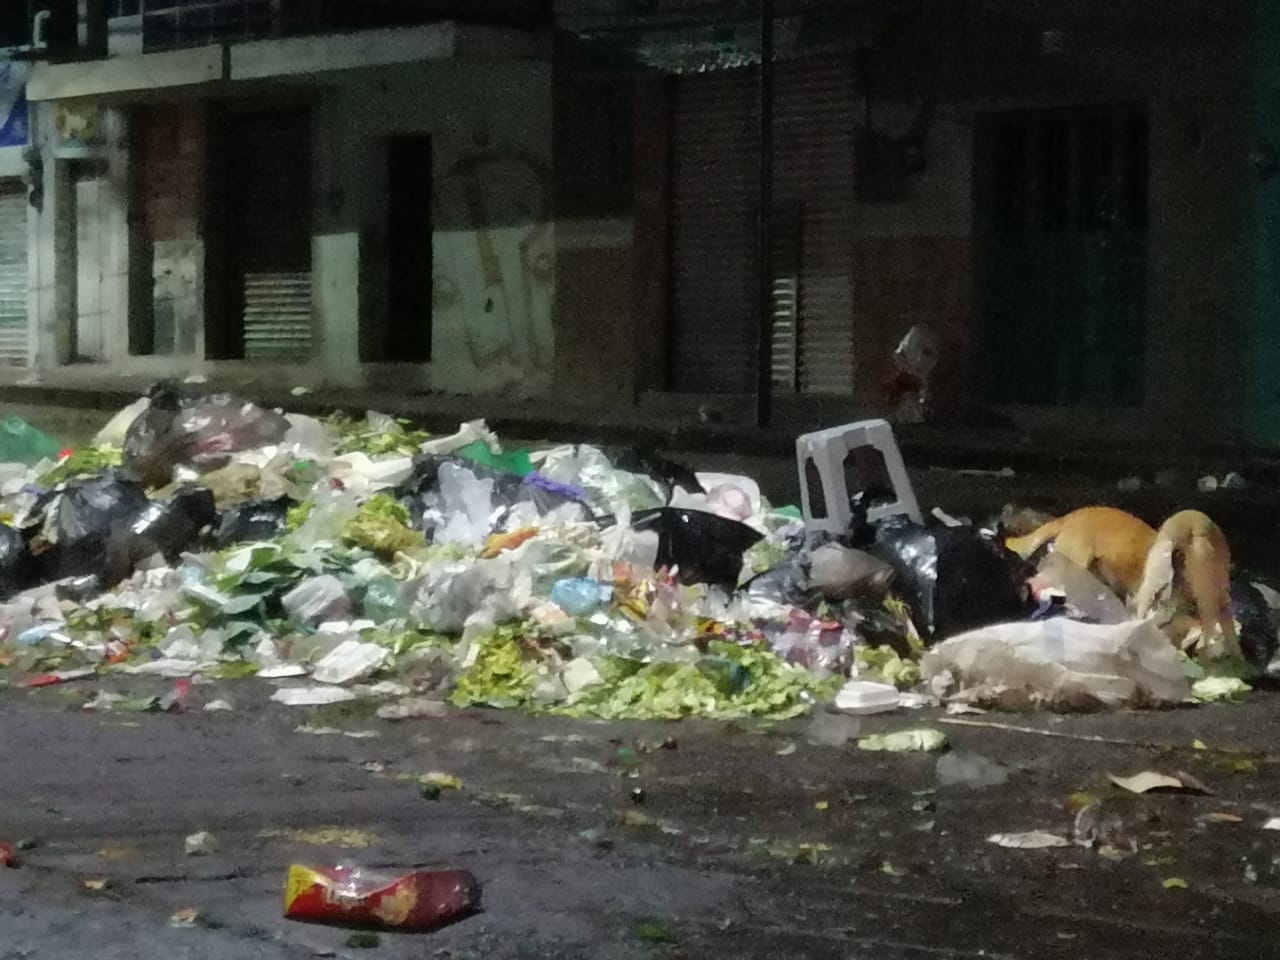 Tesorería en Atlixco desconoce destino de recursos por recolección de basura